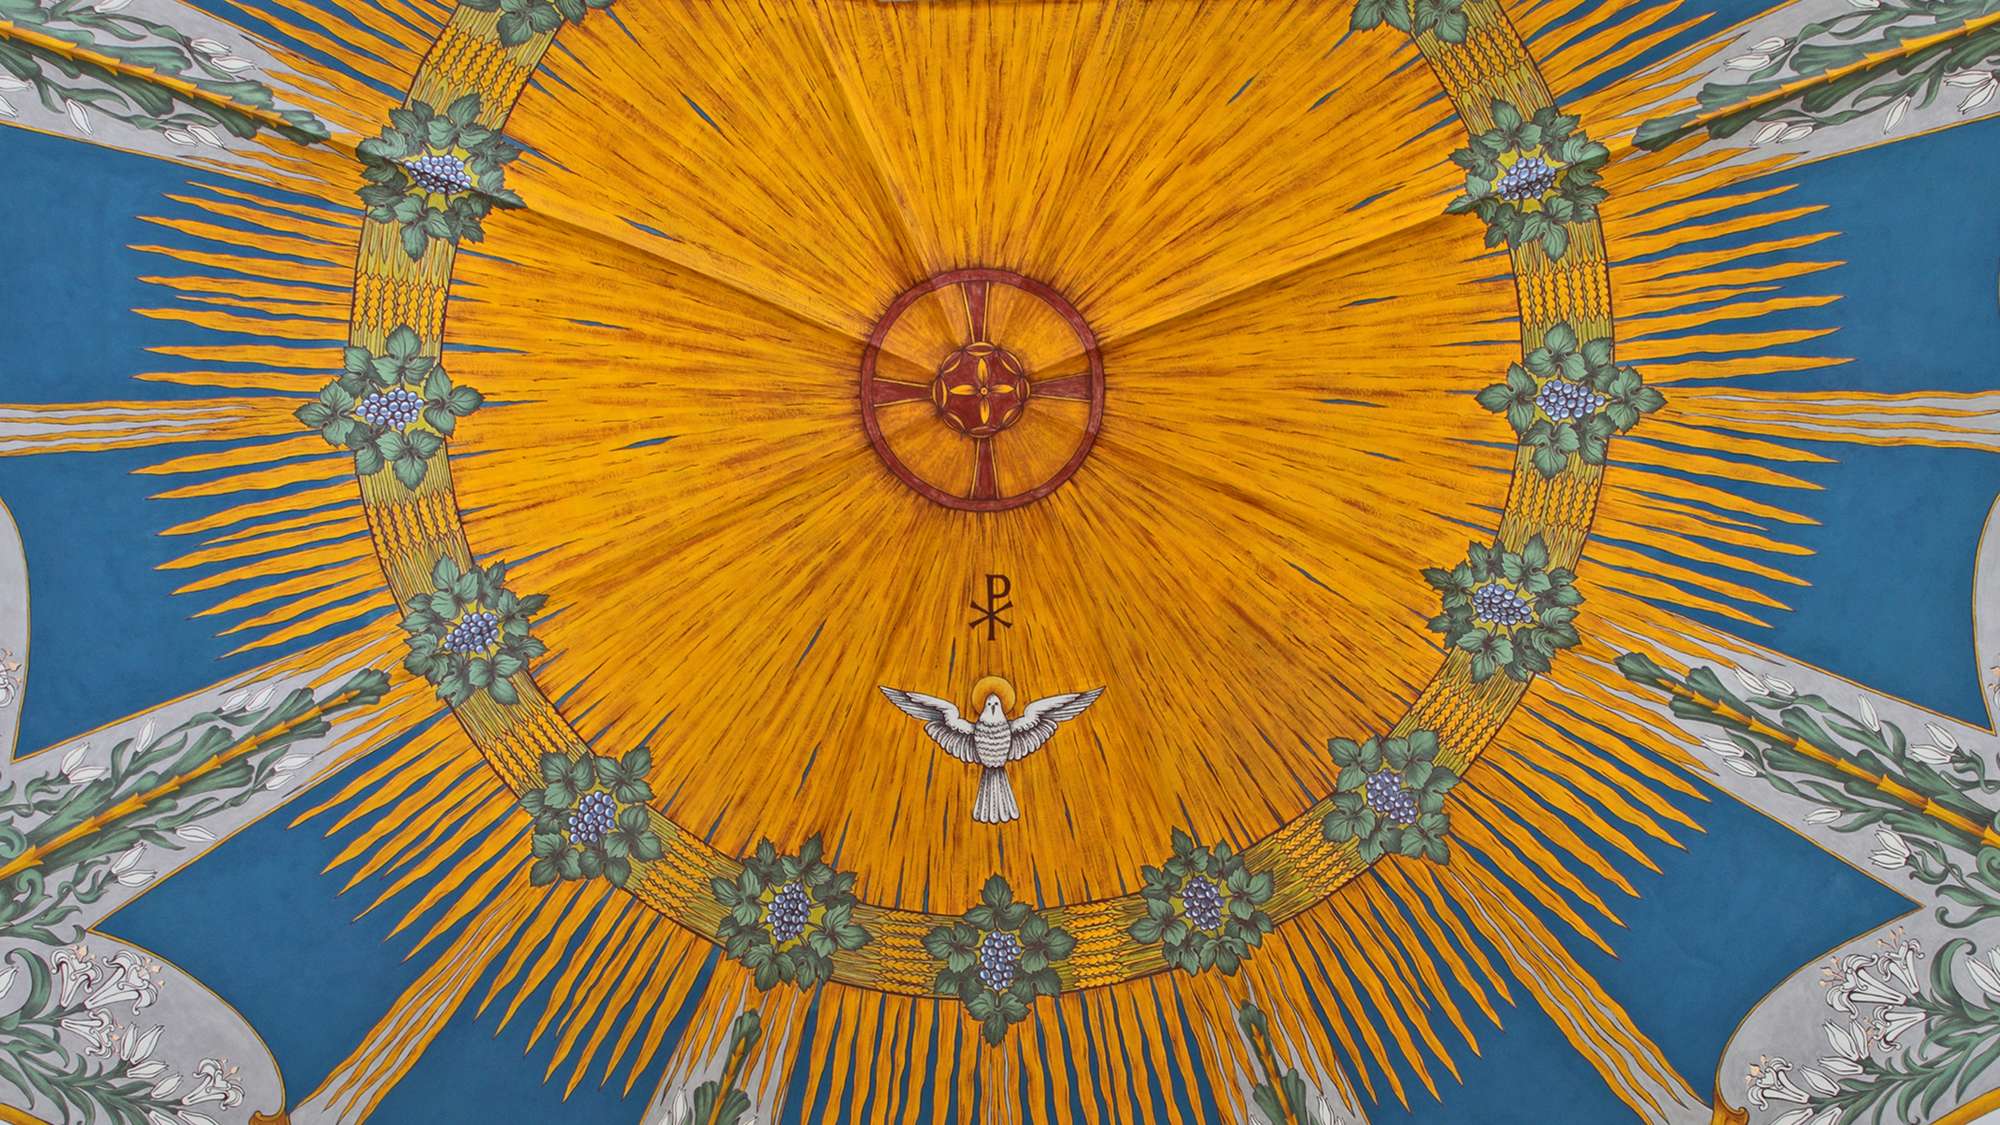 Deckenmalerei im Schirmgewölbe über dem Altar der Evangelische Kirche Halsbrücke zeigt eine Taube, Symbol für den heiligen Geist, Pfingstsymbol und das Buchstabensymbol für das Christentum Chrismon, die Anfangsbuchstaben von Christos: X (Chi) und P (Rho).